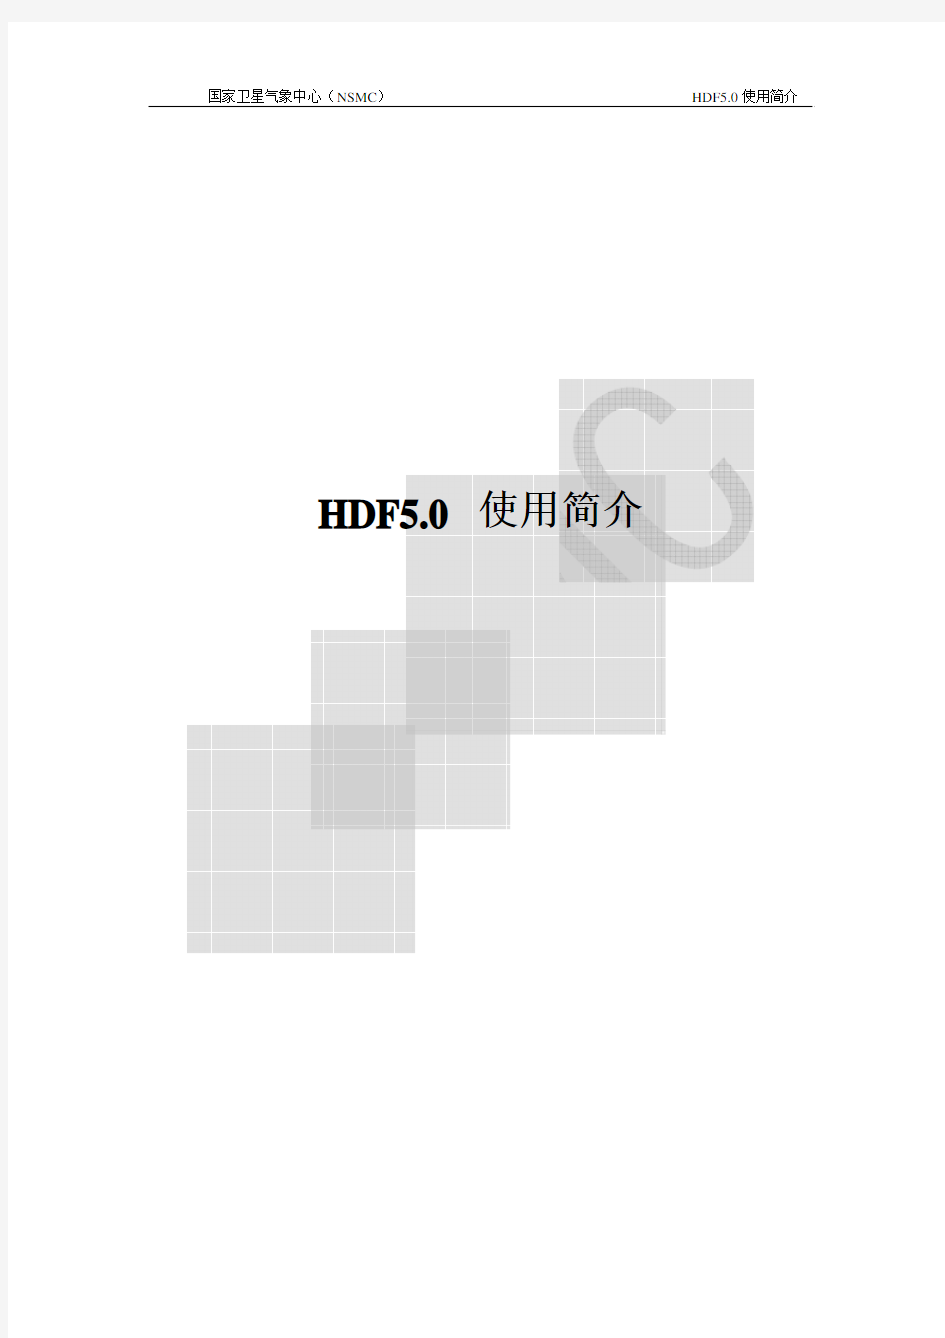 HDF5.0使用简介_chinese